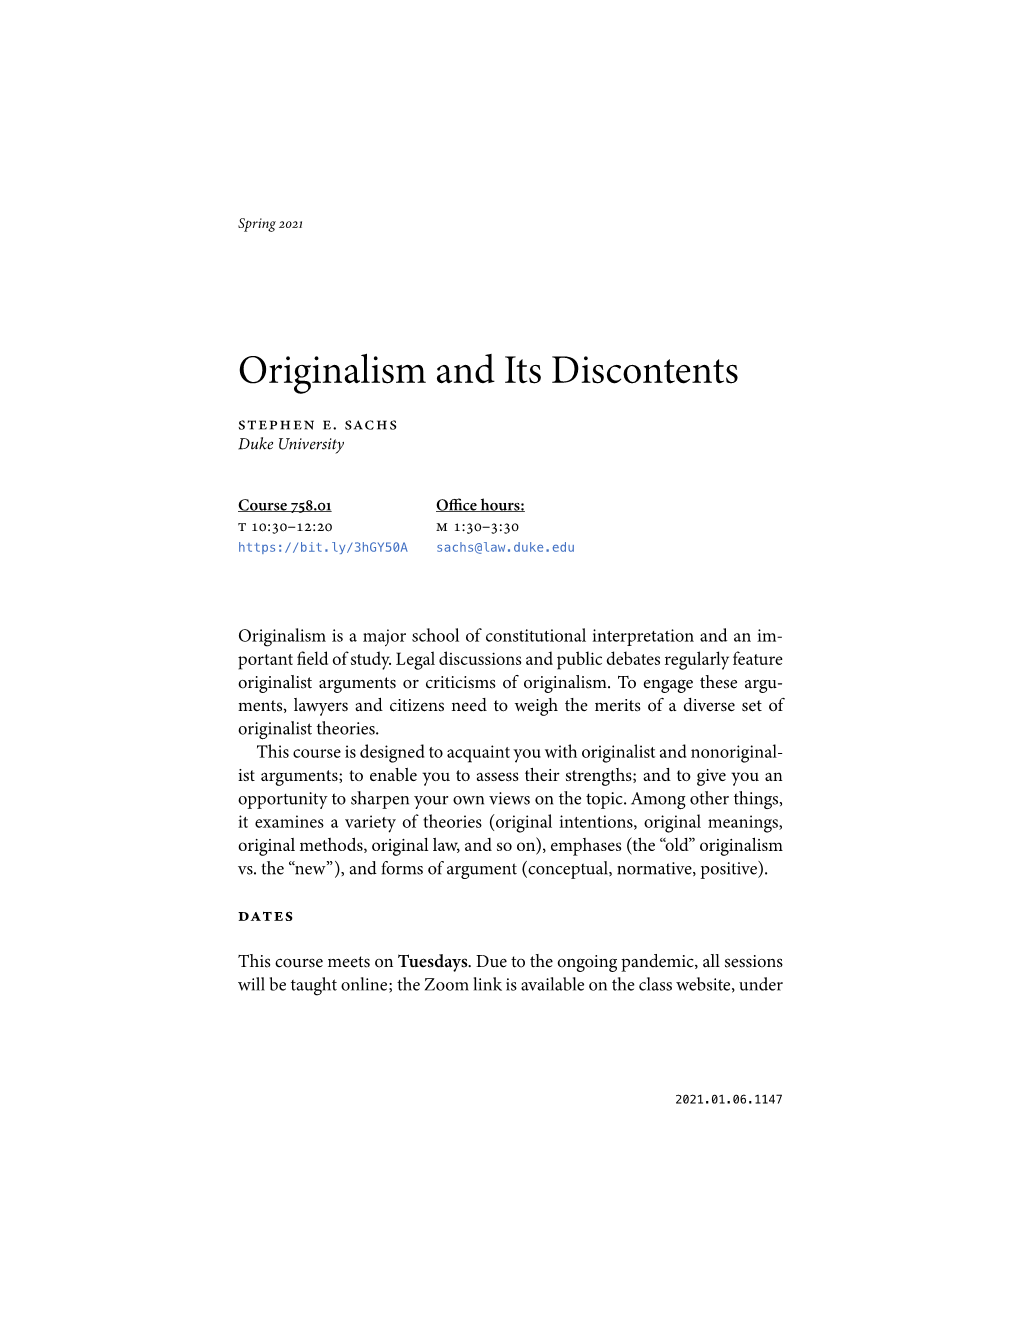 Originalism and Its Discontents